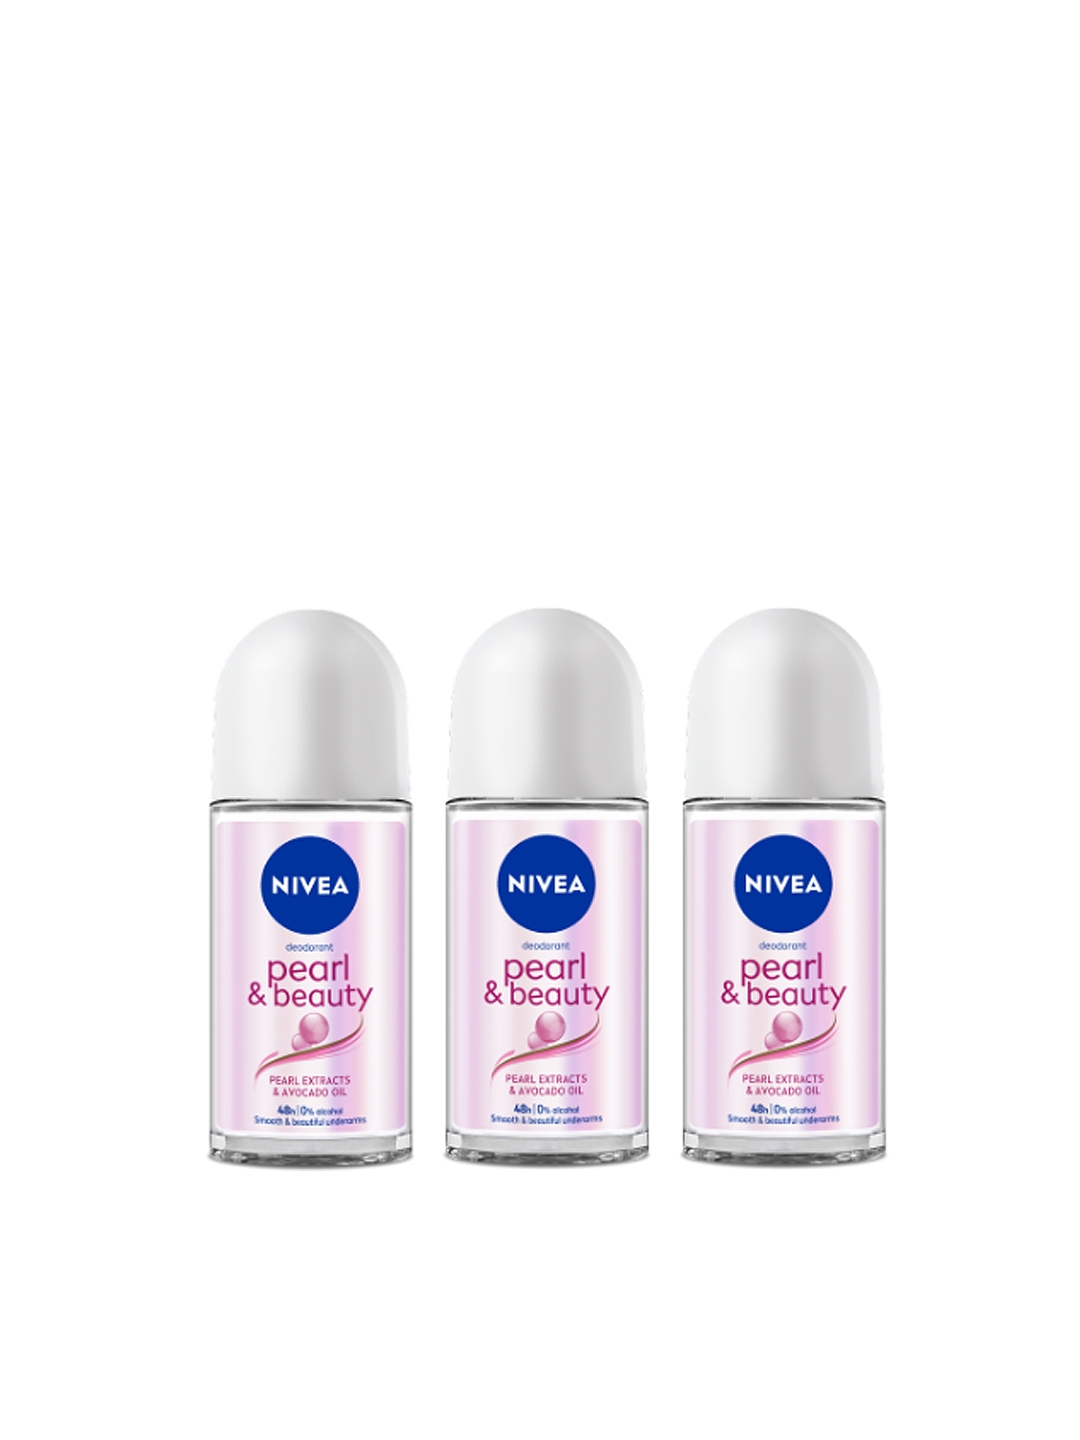 Buy Nivea Women Pack Of 3 Deodorant On Pearl & Beauty Each - Deodorant Women 6846703 | Myntra